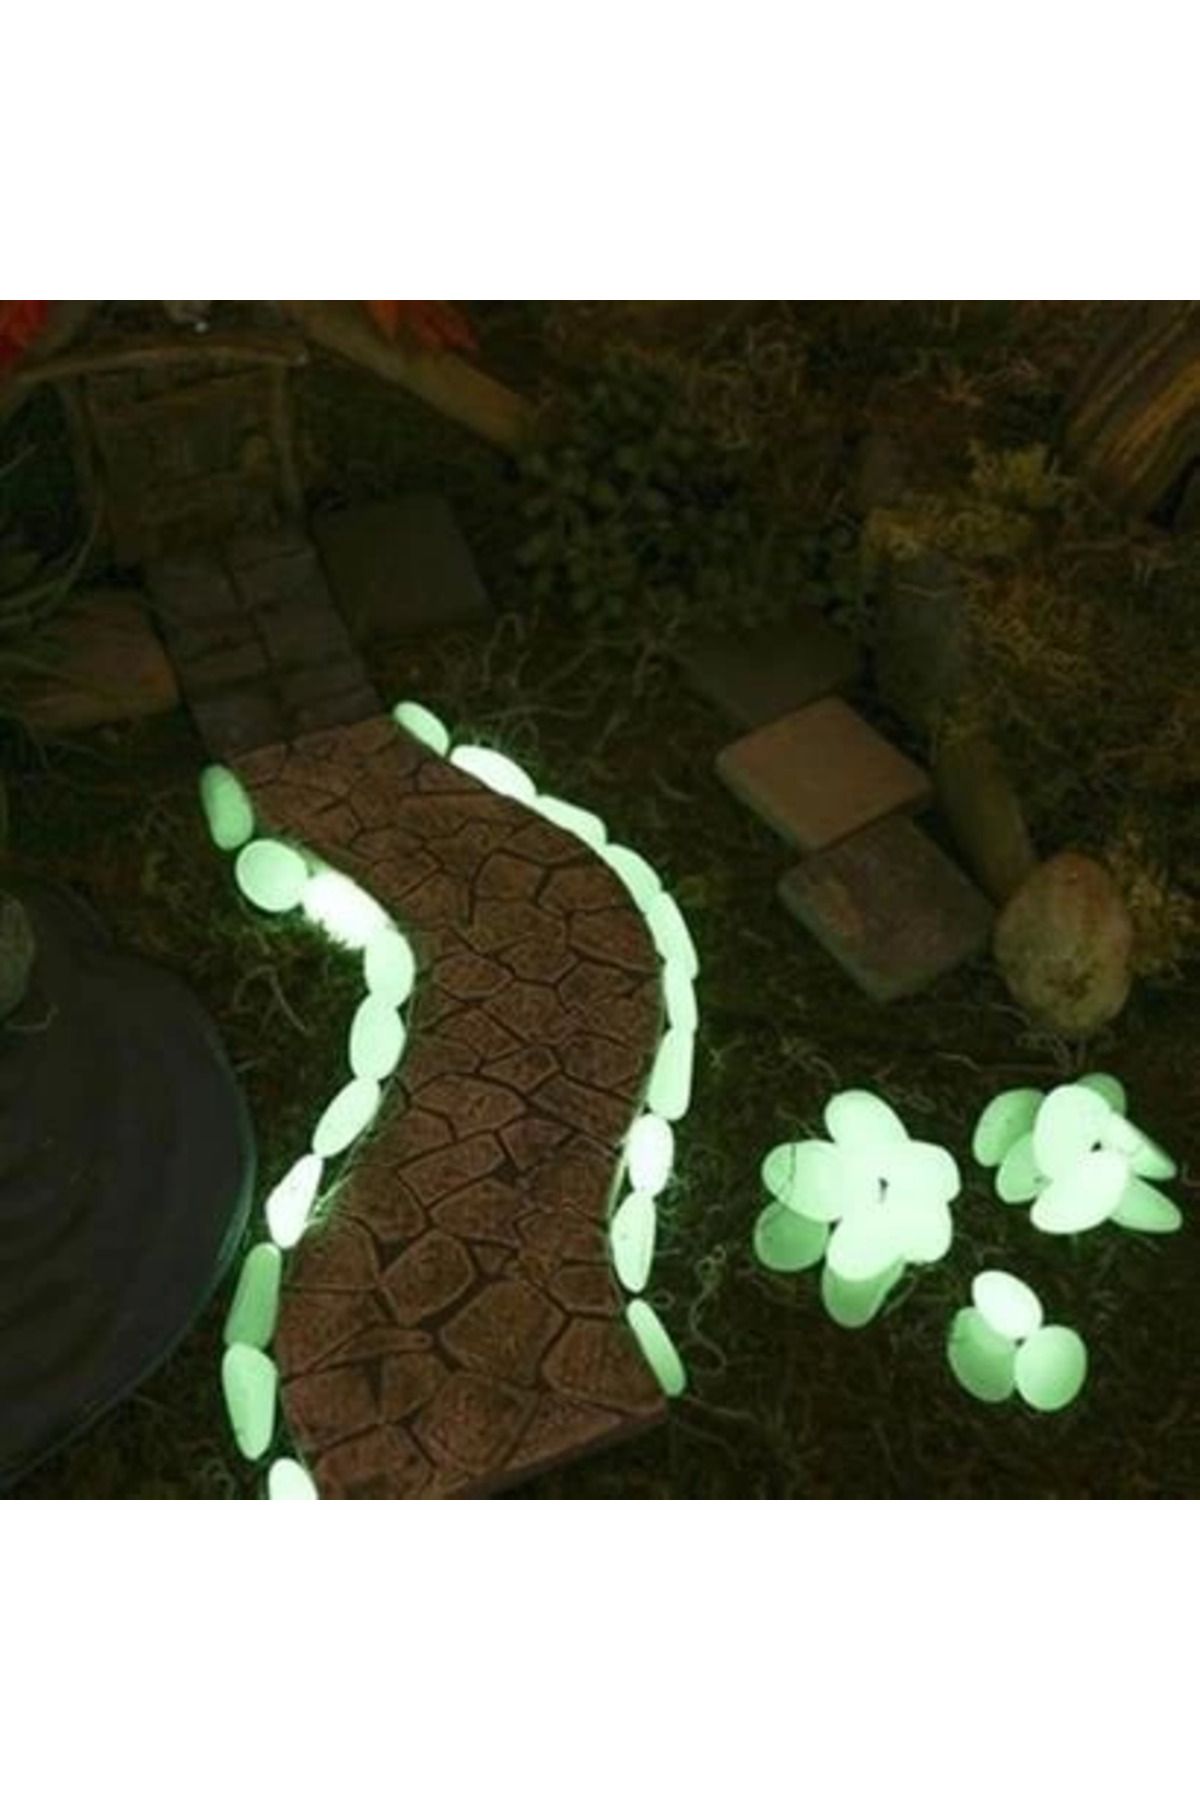 Karaca Arıcılık Gece Karanlıkta Işık Vererek Parlayan Dekoratif Çakıl Taşları